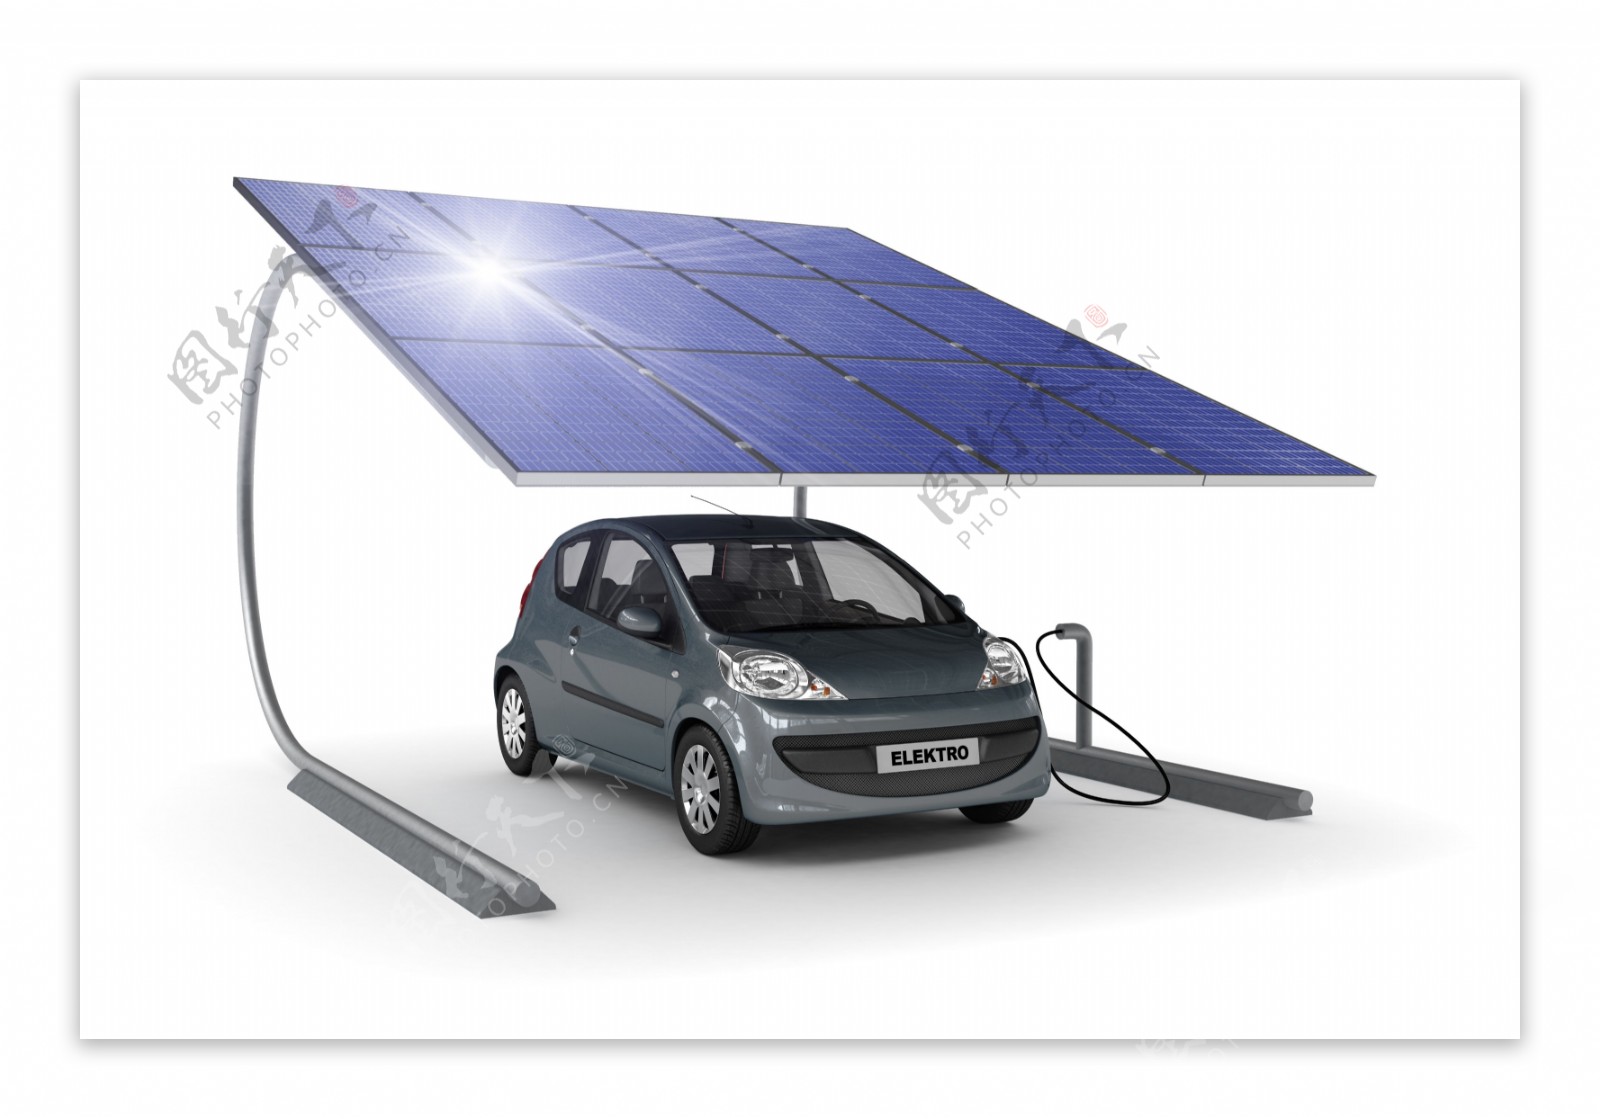 太阳能汽车图片